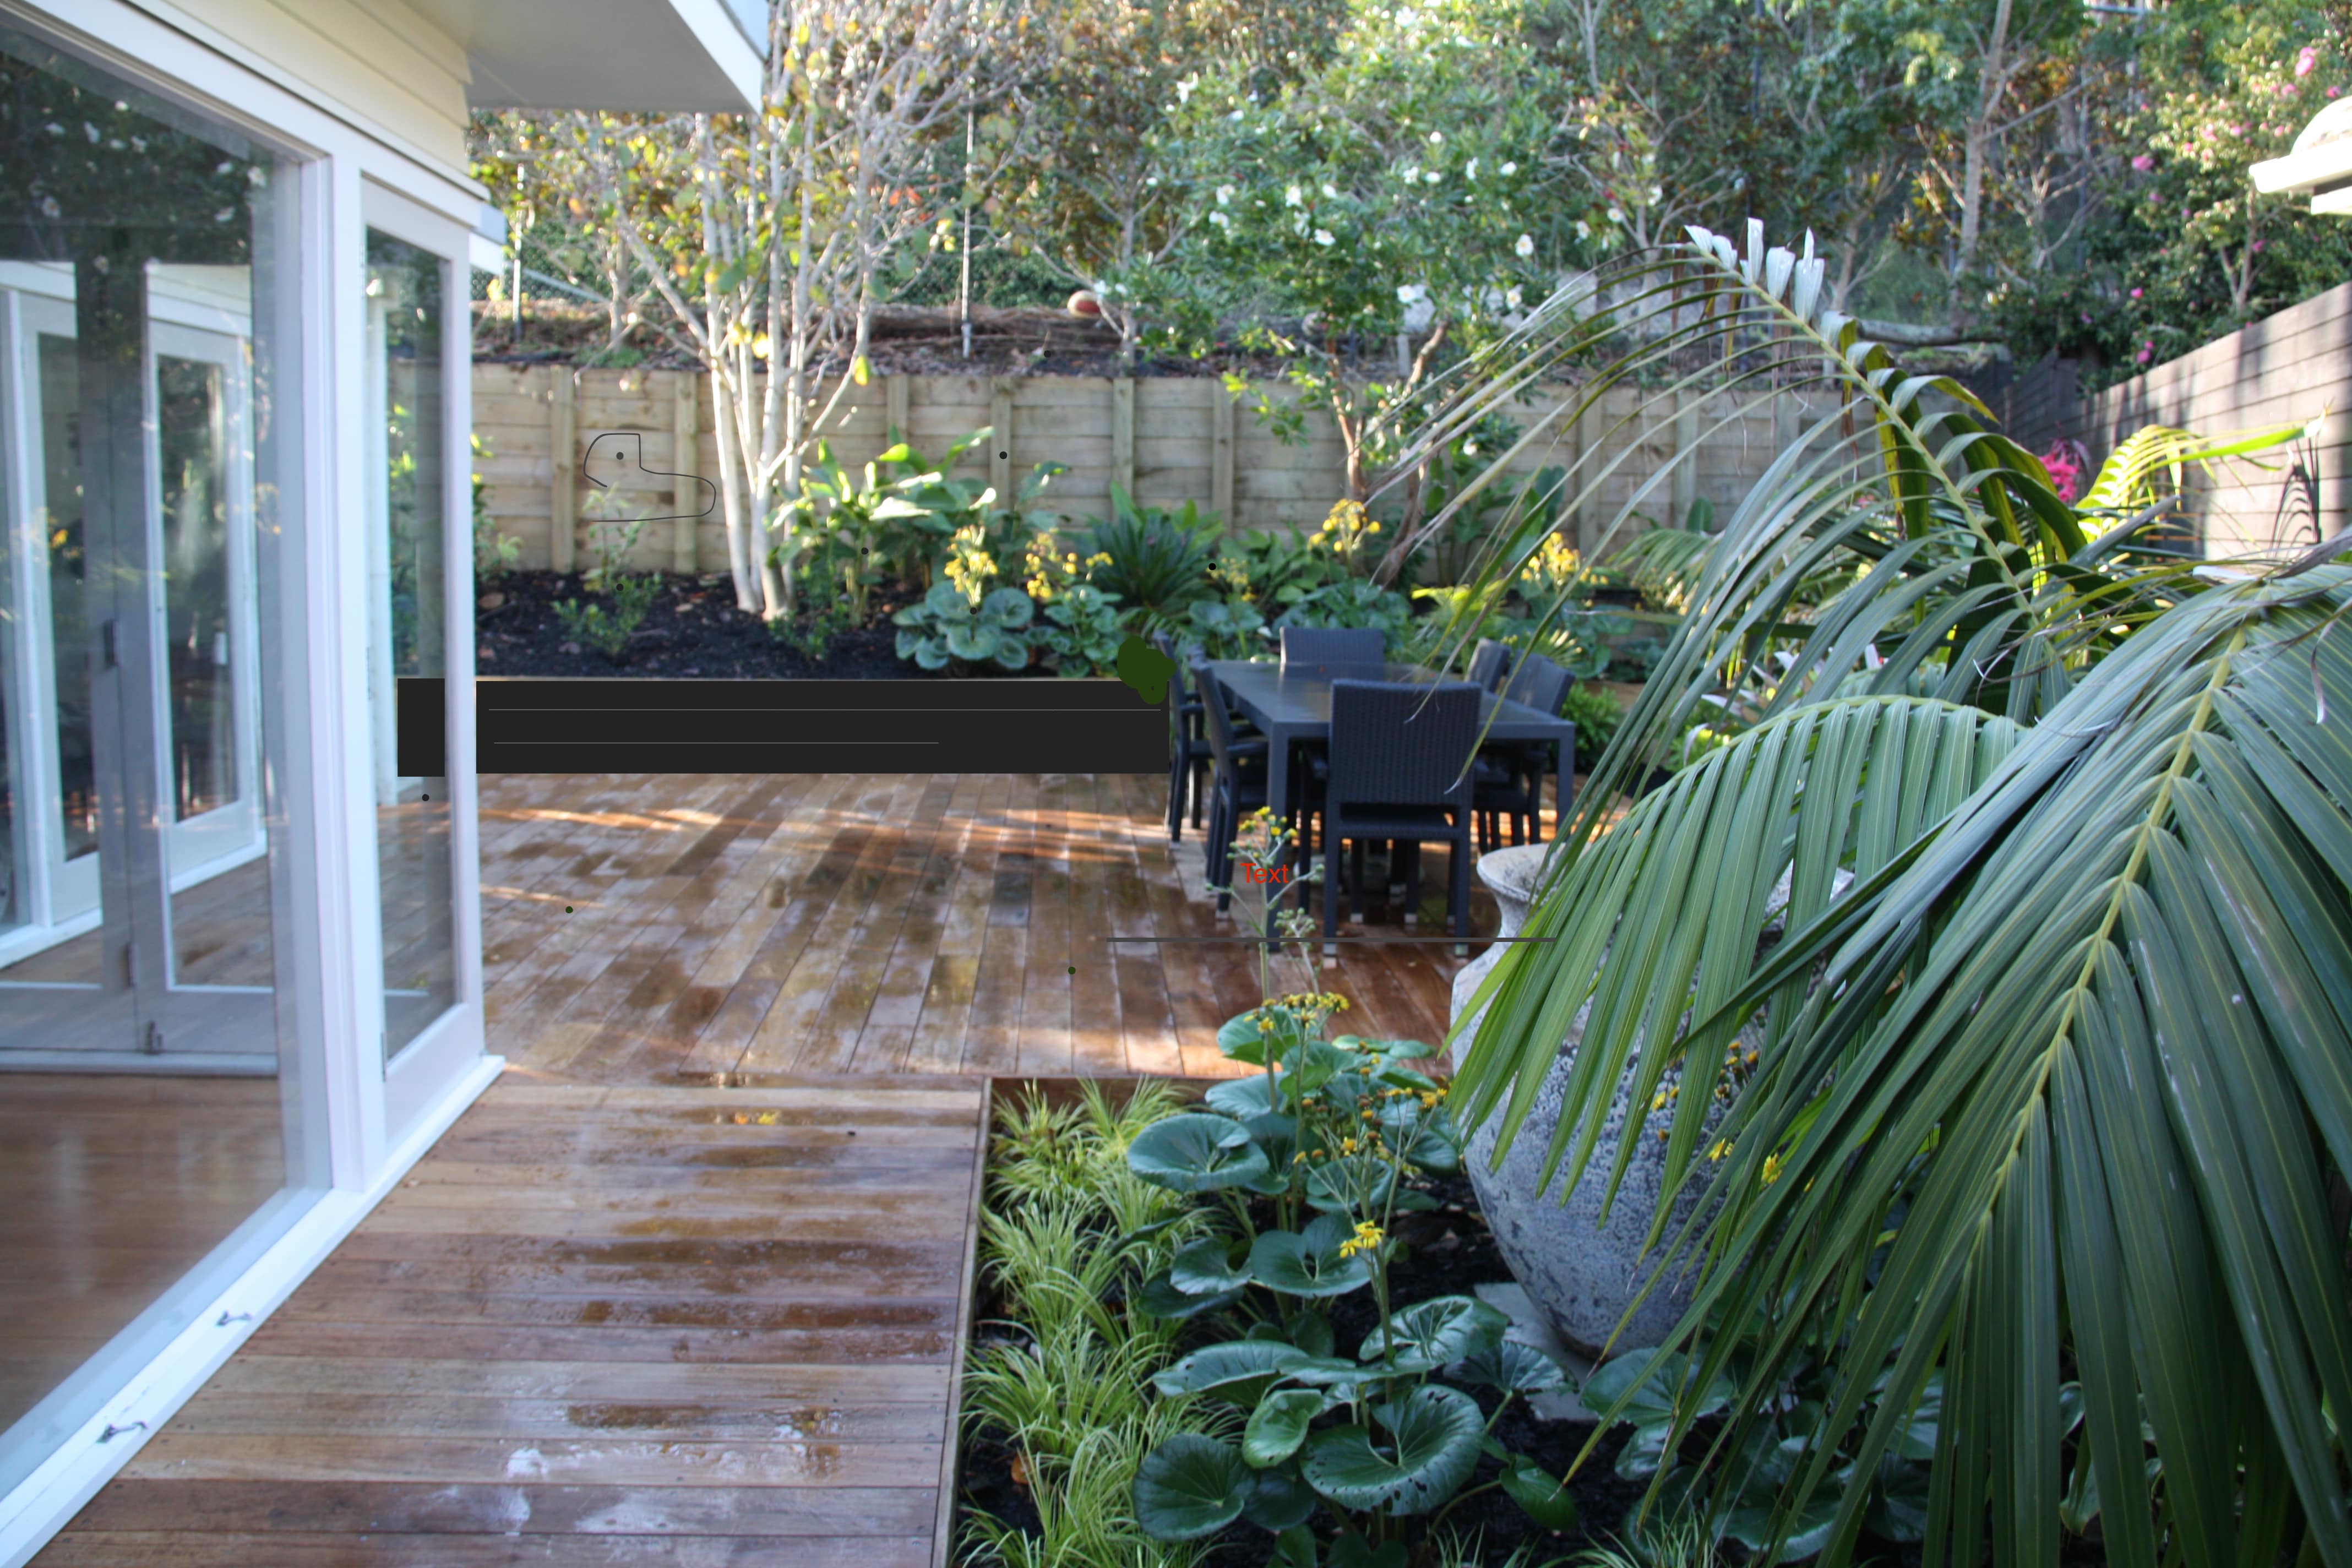 Tropical Garden and boardwalk ideas by Kirsten Sach Landscape Design